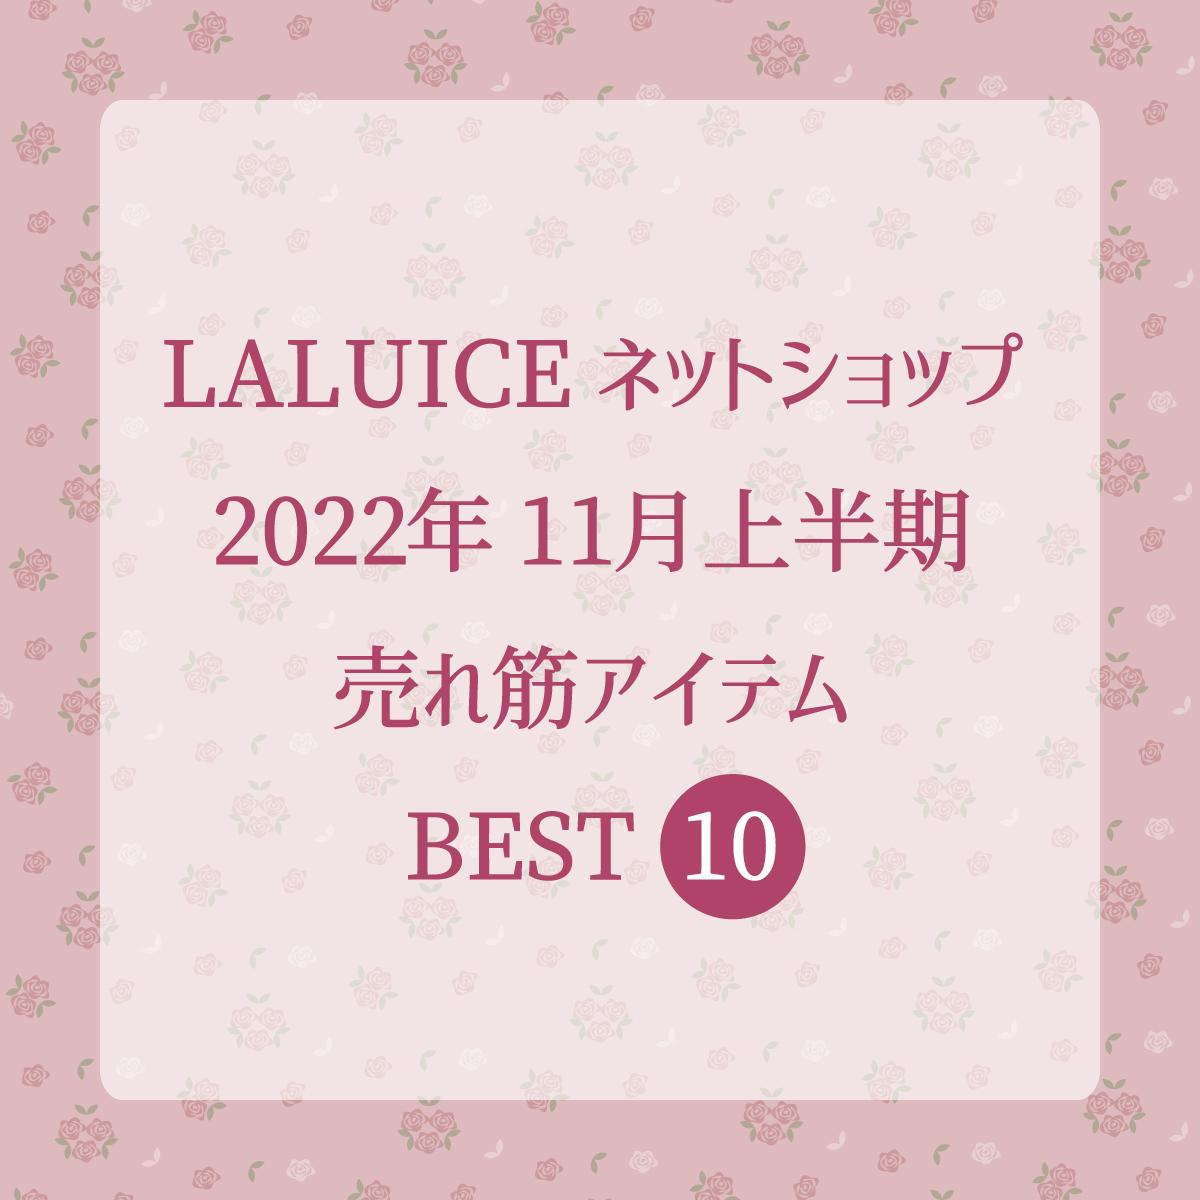 2022年11月上半期(11/1～11/15) LALUICEネットショップ売れ筋アイテム BEST10